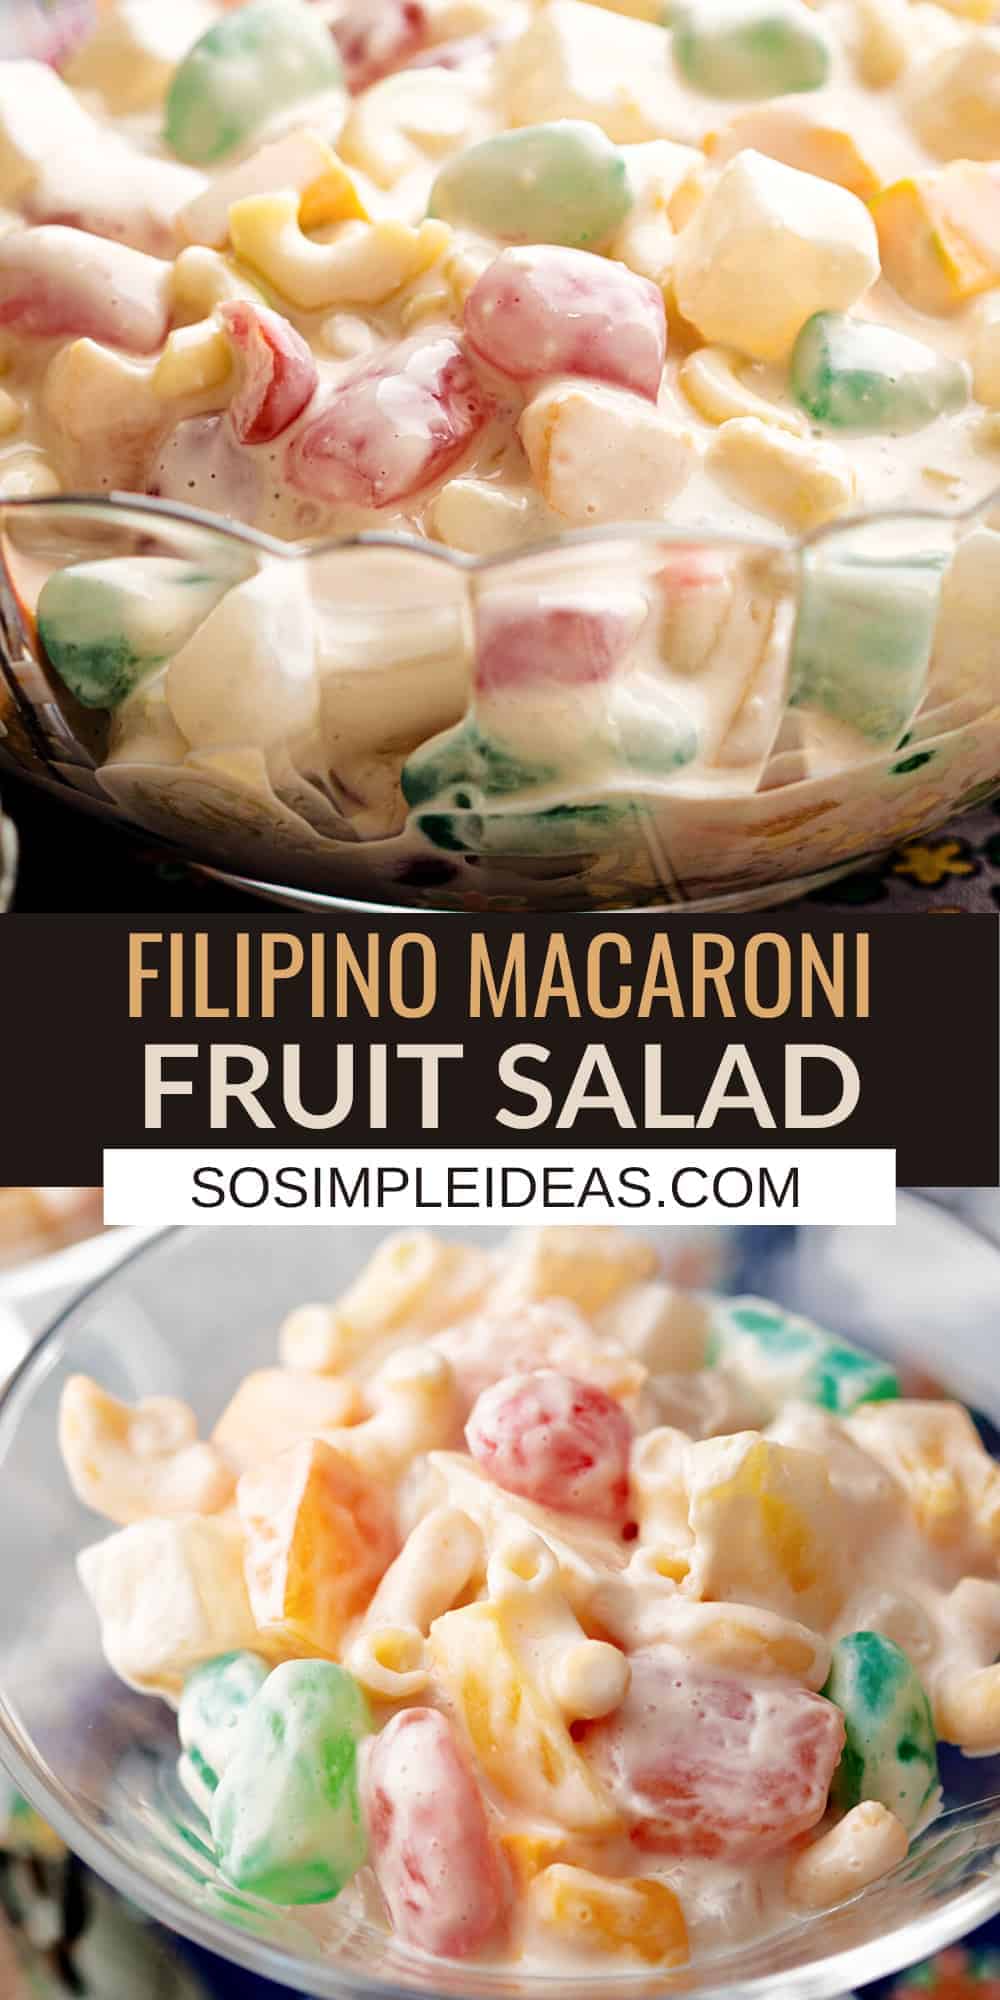 Как приготовить салат из макарон с фруктовым коктейлем